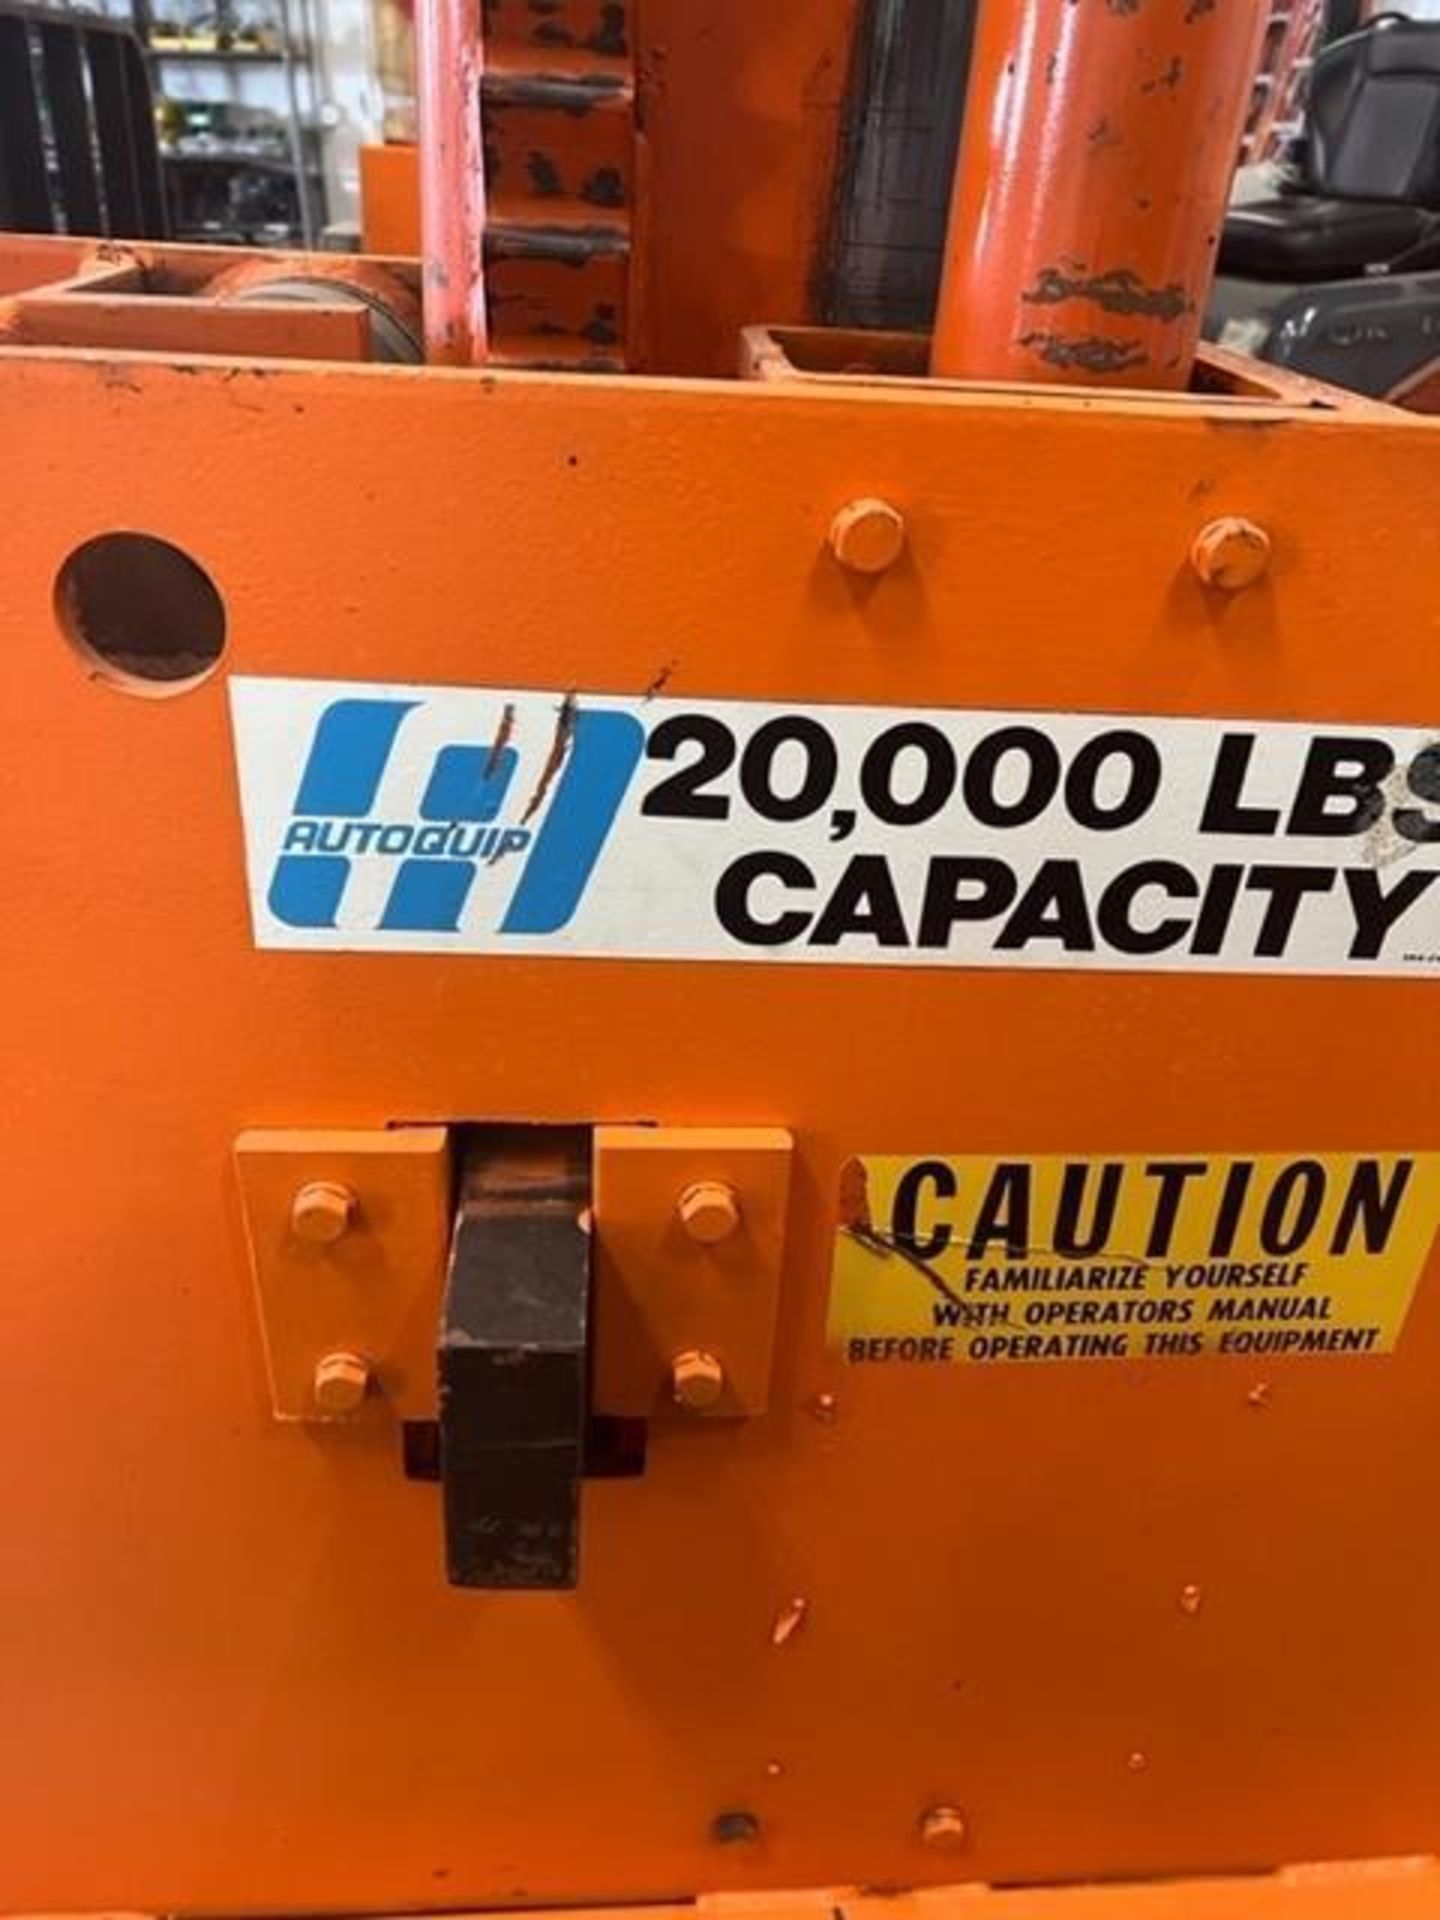 Autoquip 20,000 # Capacity Forklift Hoist. Peoria, IL - Image 8 of 23